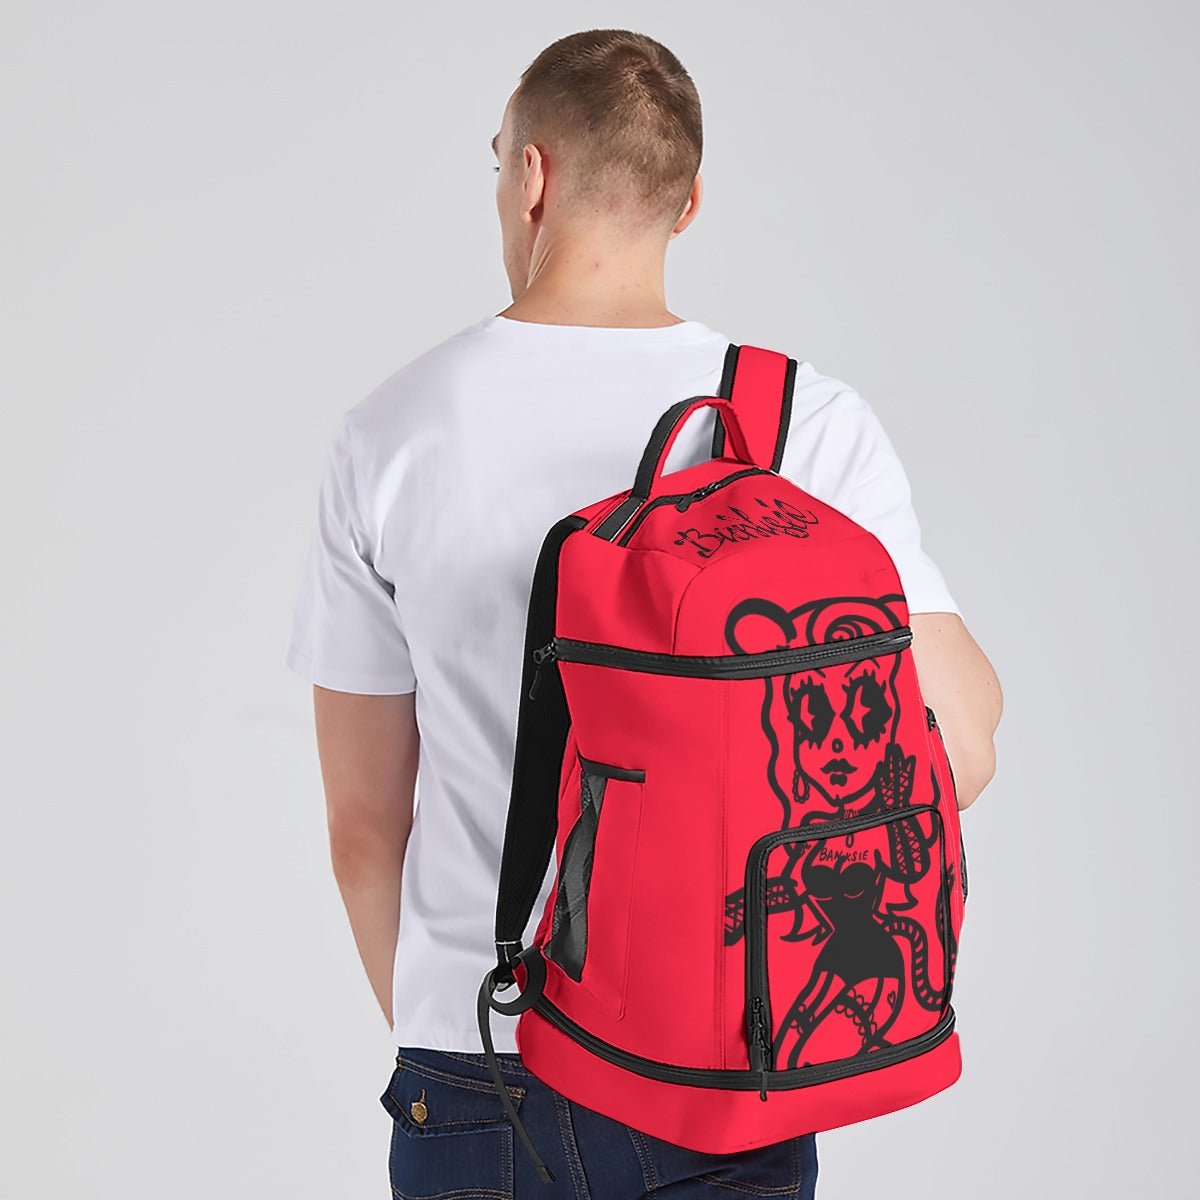 Banksie - Rat Queen Logo Large Travel Backpack - dragqueenmerch